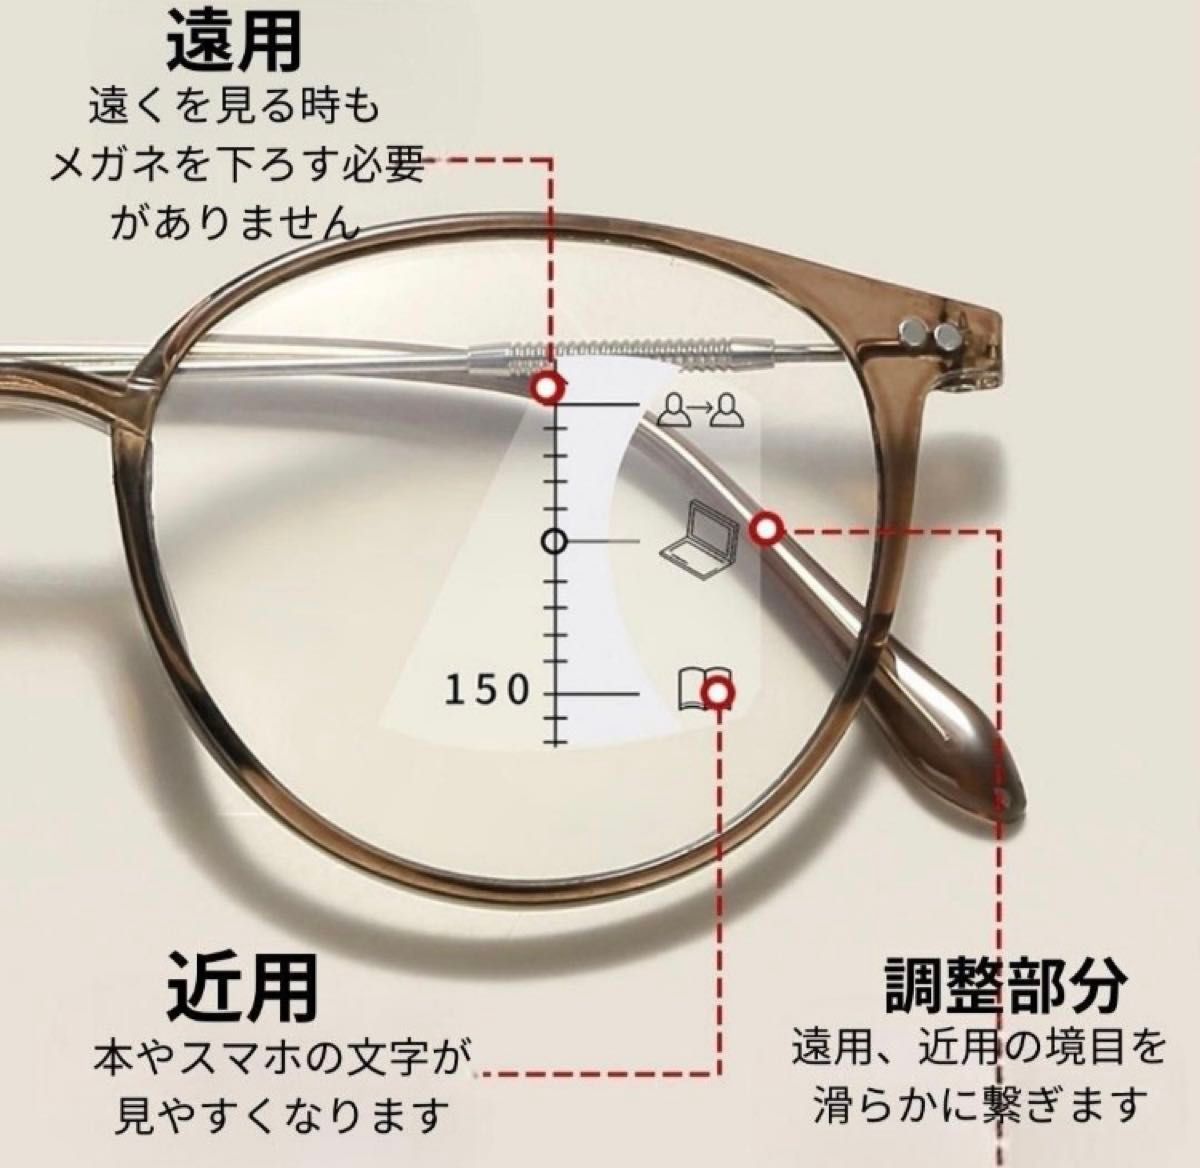 老眼鏡  累進多焦点  遠近両用  ブルーライトカット+3.0 ブラウン  メガネ 老眼鏡 眼鏡 シニアグラス リーディンググラス